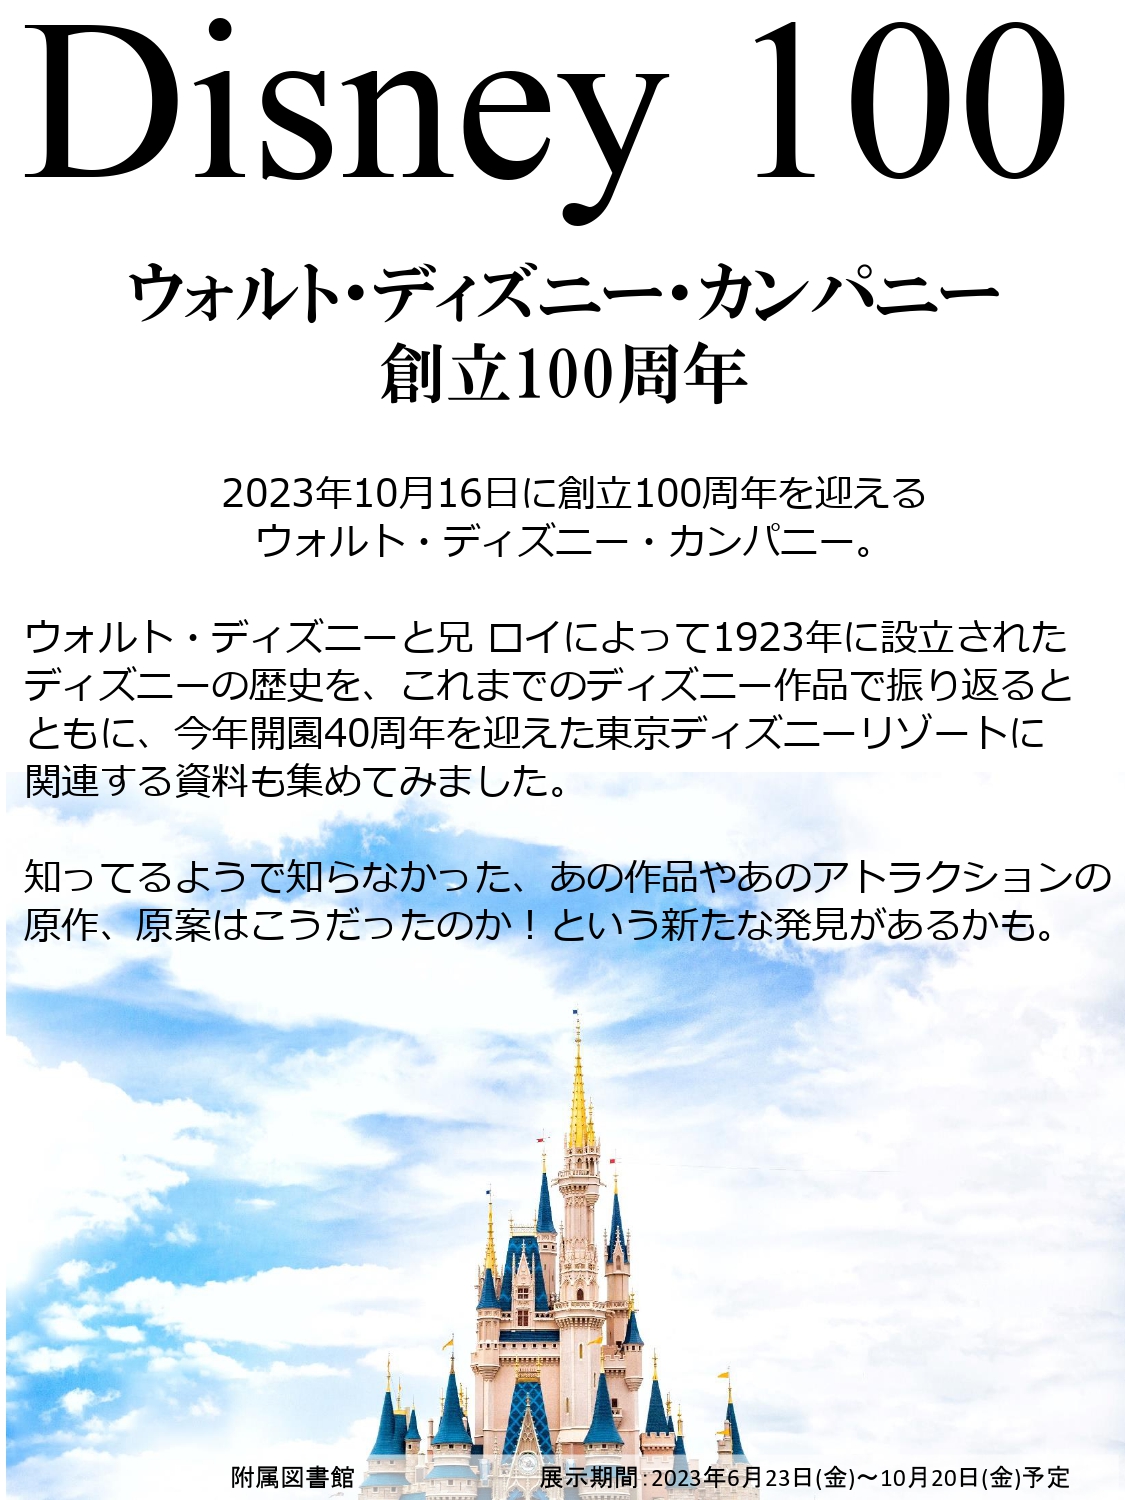 「Disney 100 ～ ウォルト・ディズニー・カンパニー創立100周年 ～」展を開催しています